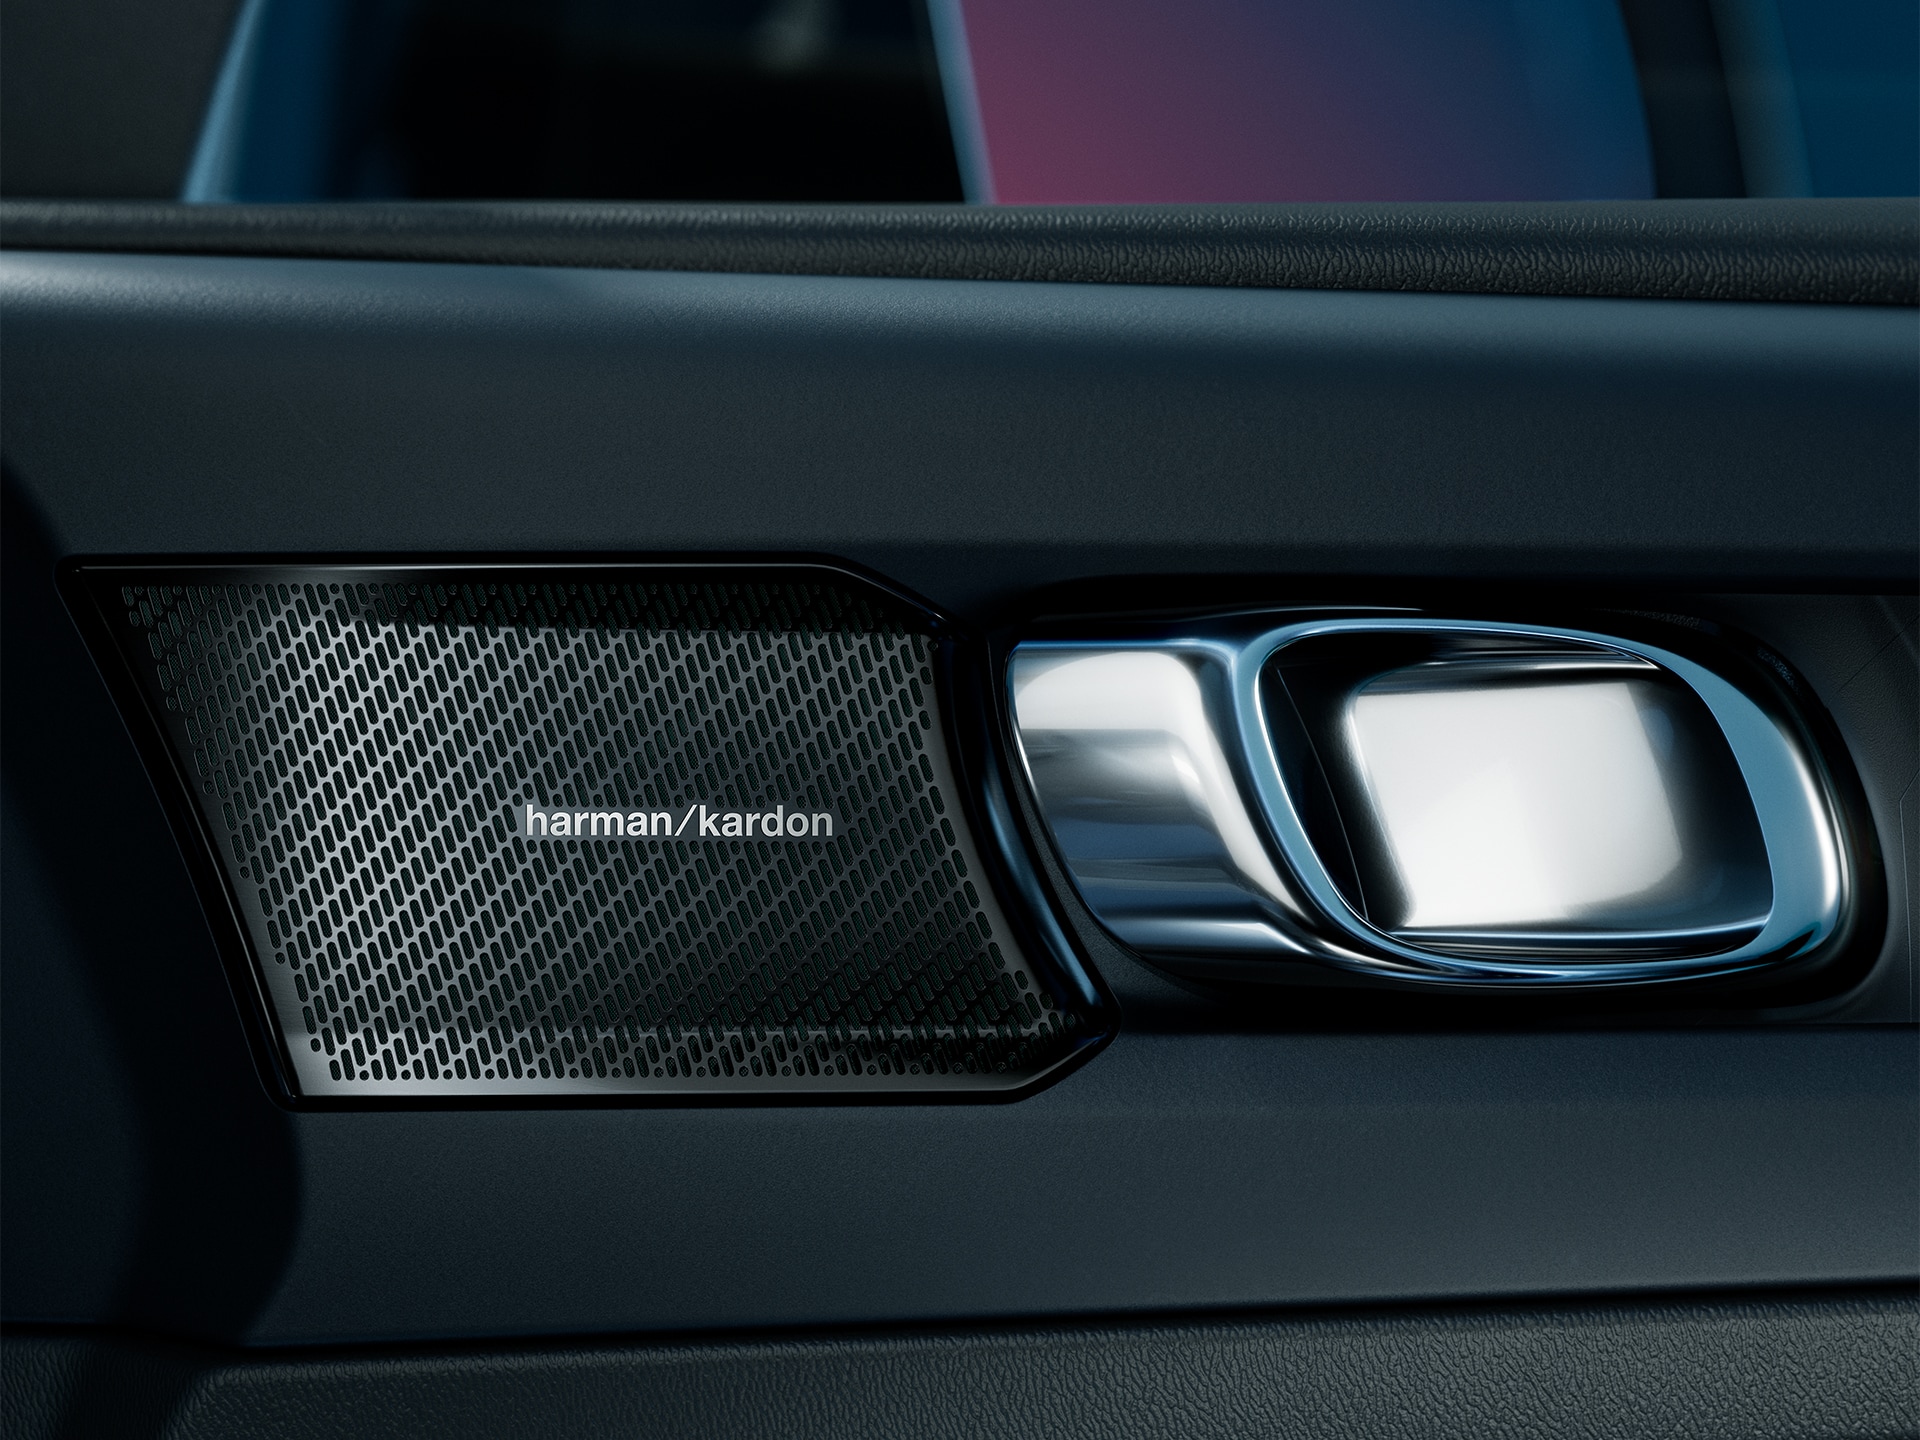 Innenansicht des Volvo C40 Recharge Pure Electric mit dem Harman Kardon Lautsprechersystem in der Tür.